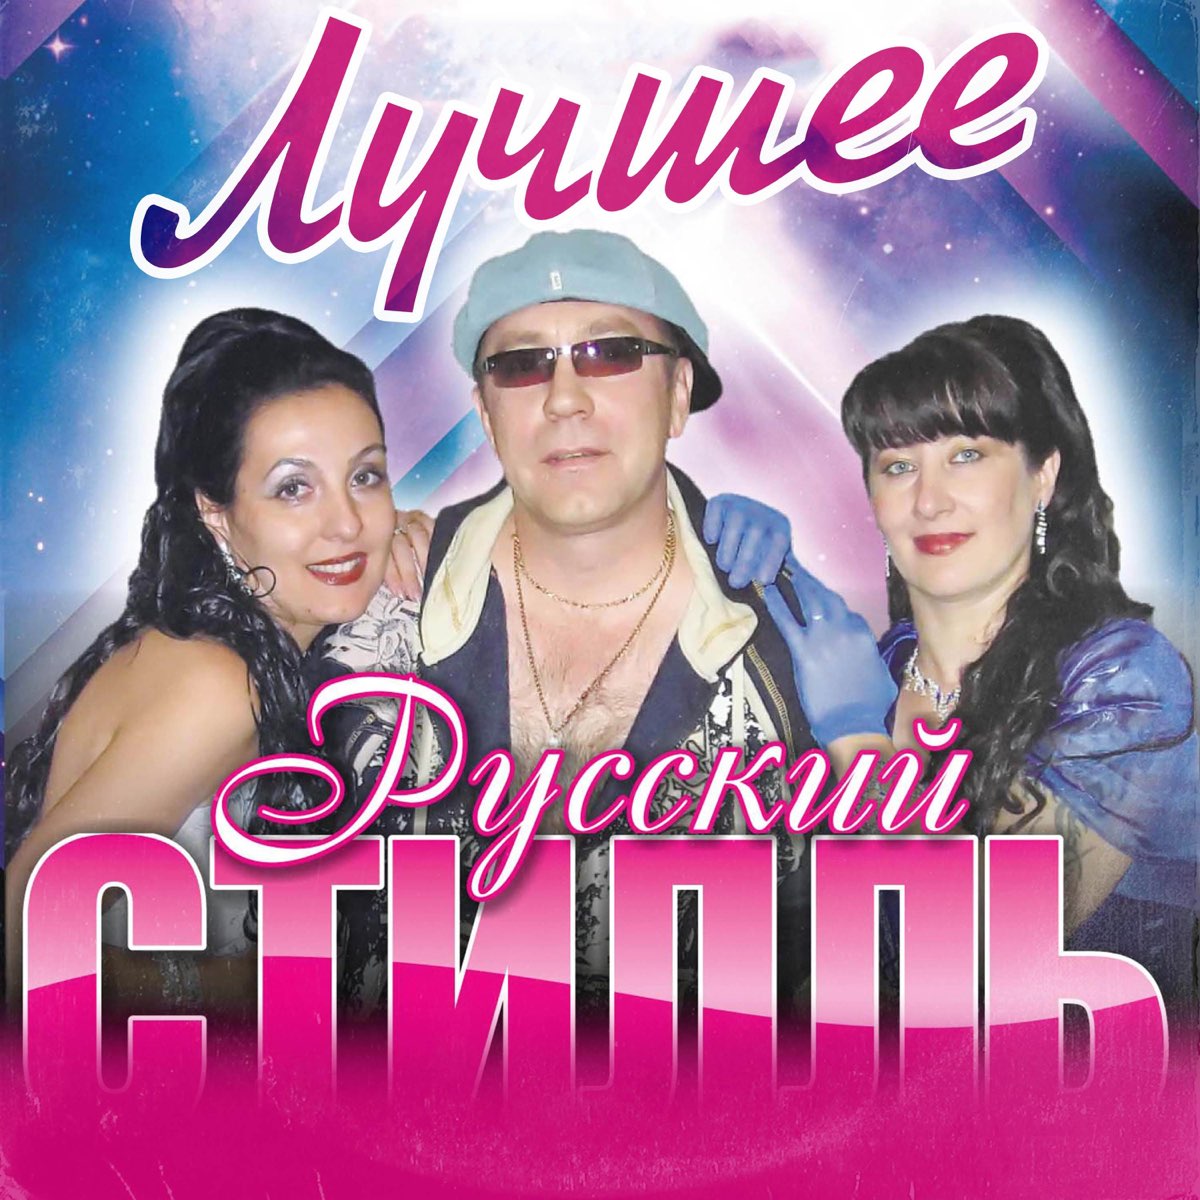 Русский стиль новый песни. Пахомов и группа русский стиль. Диско группа русский стиль солистки.